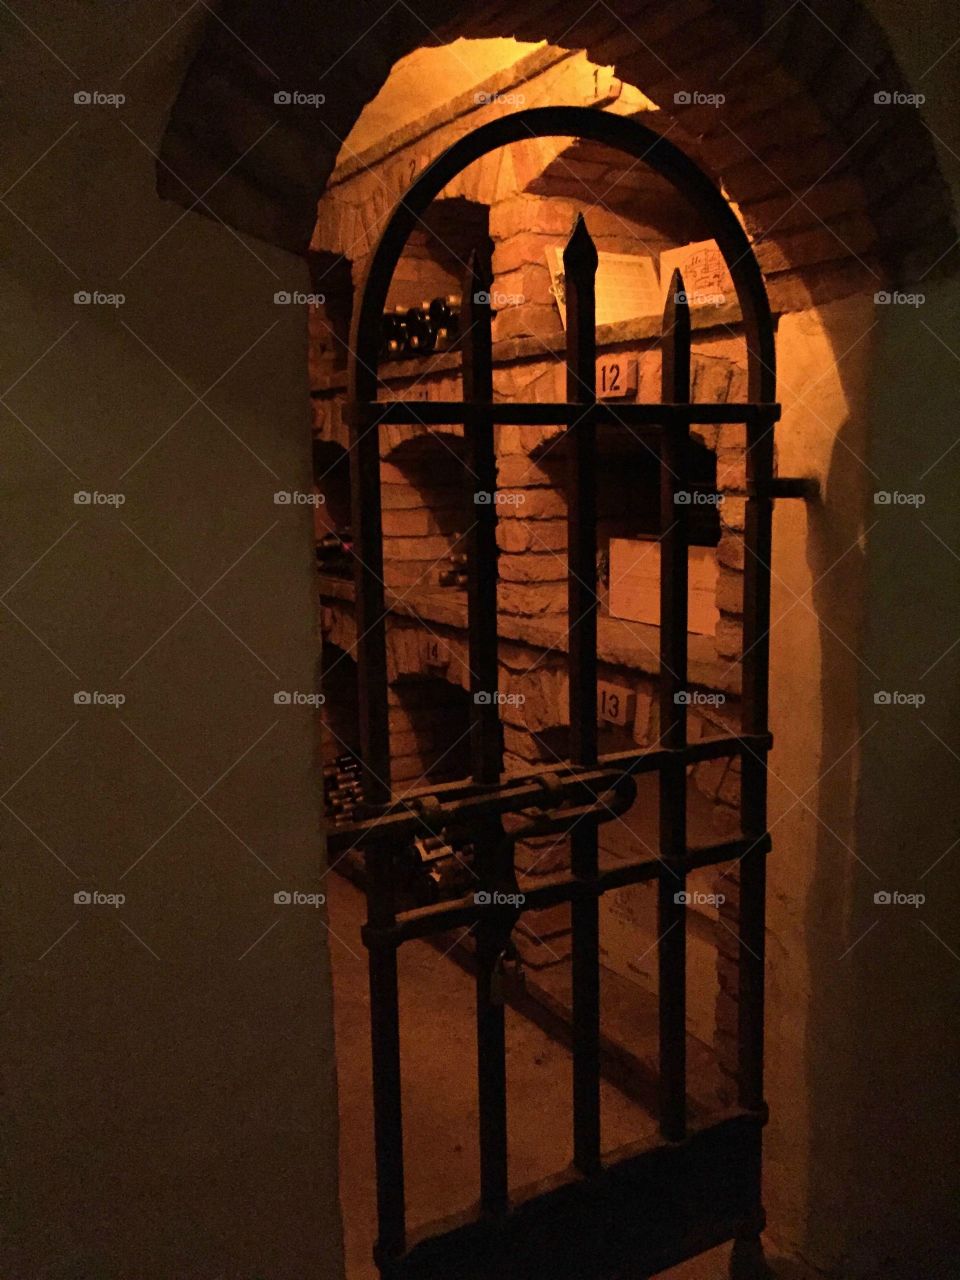 Castello di Amorosa wine cellar